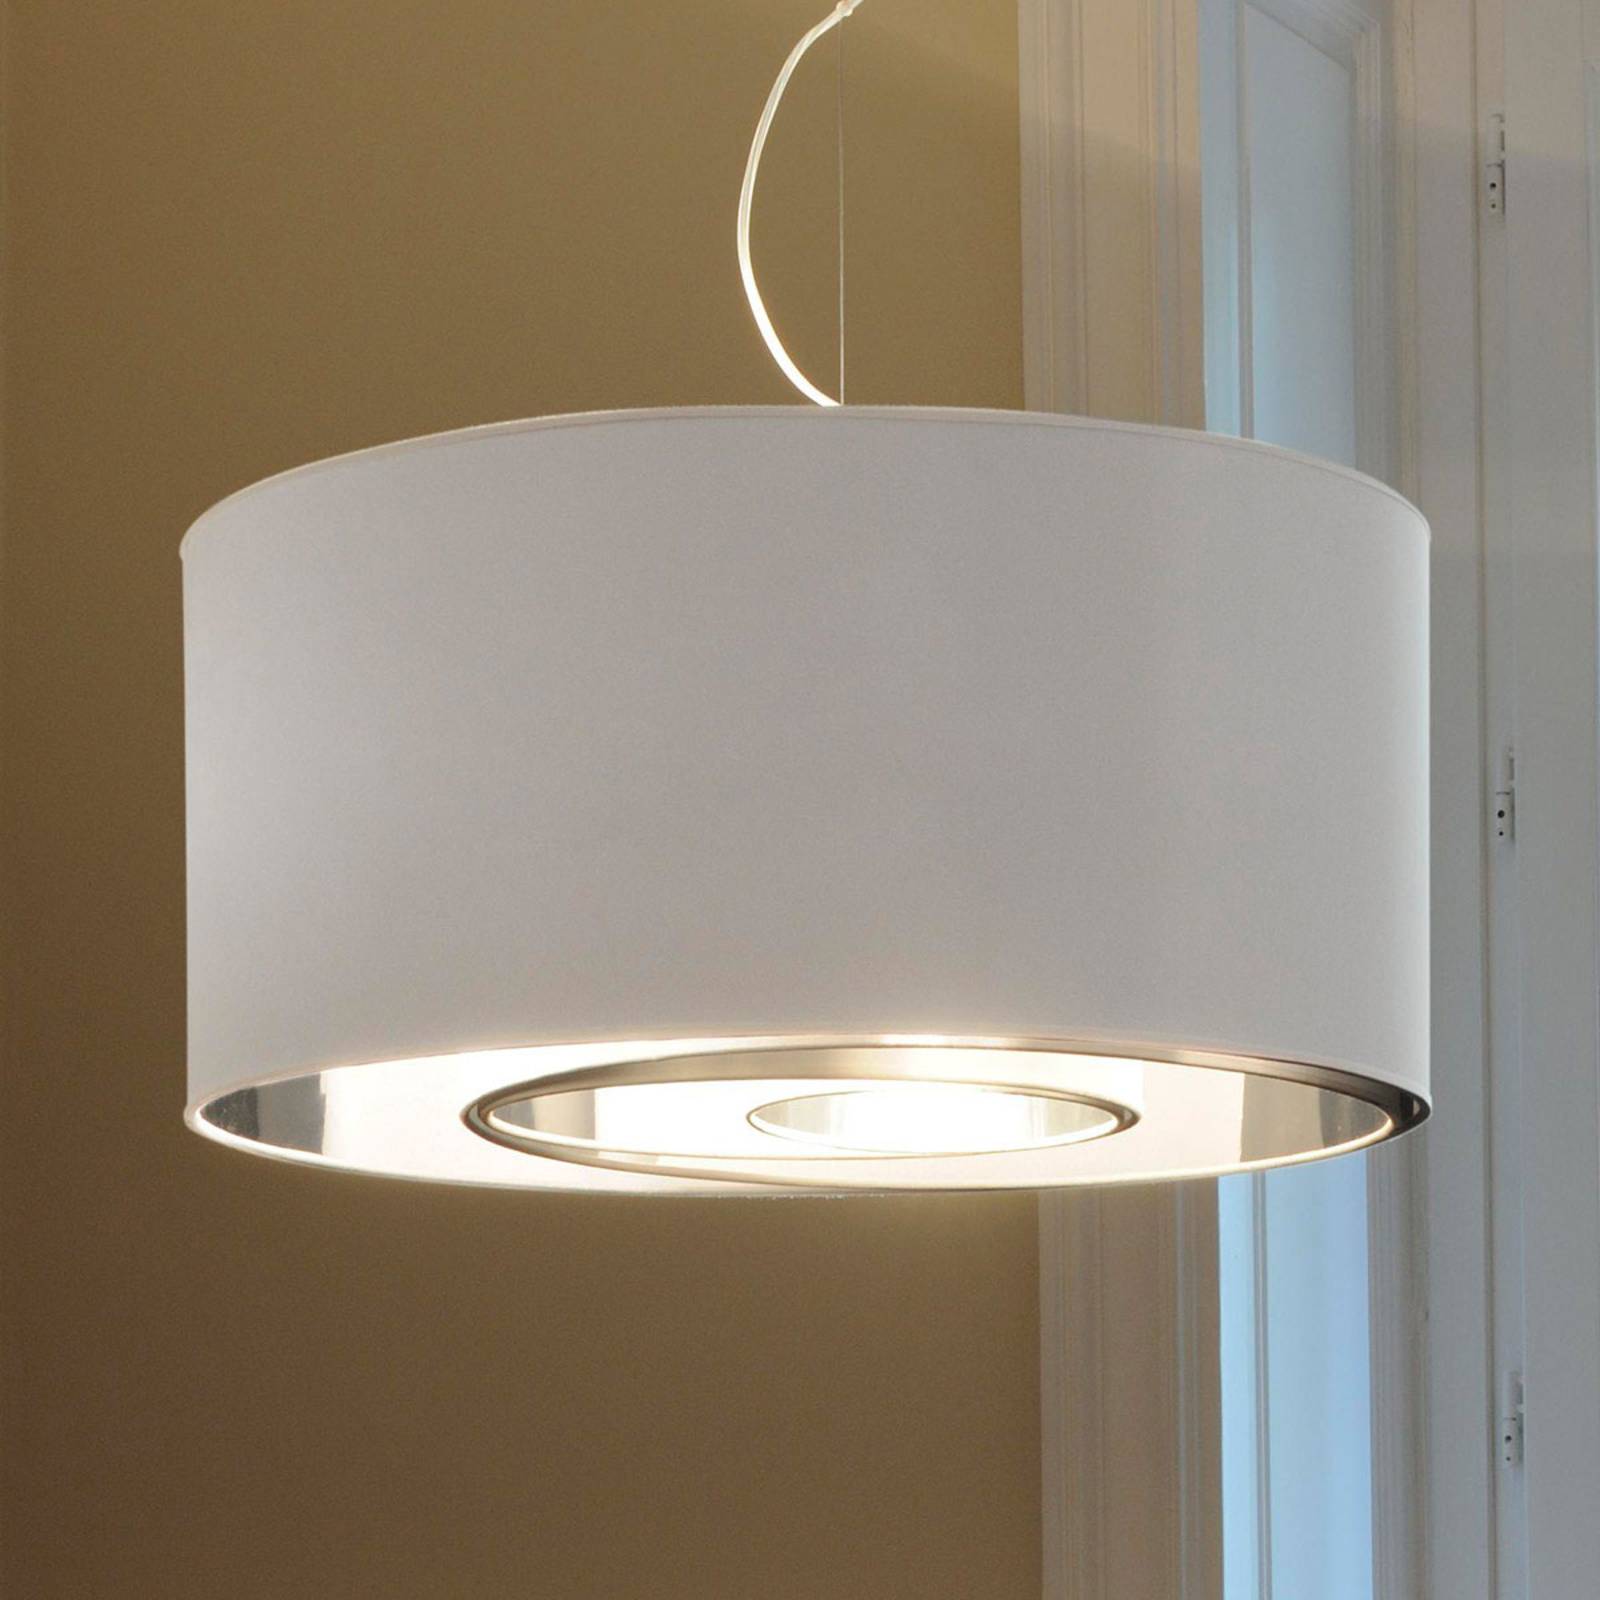 Lampa wisząca CIRCLES, 65 cm, biało-srebrna